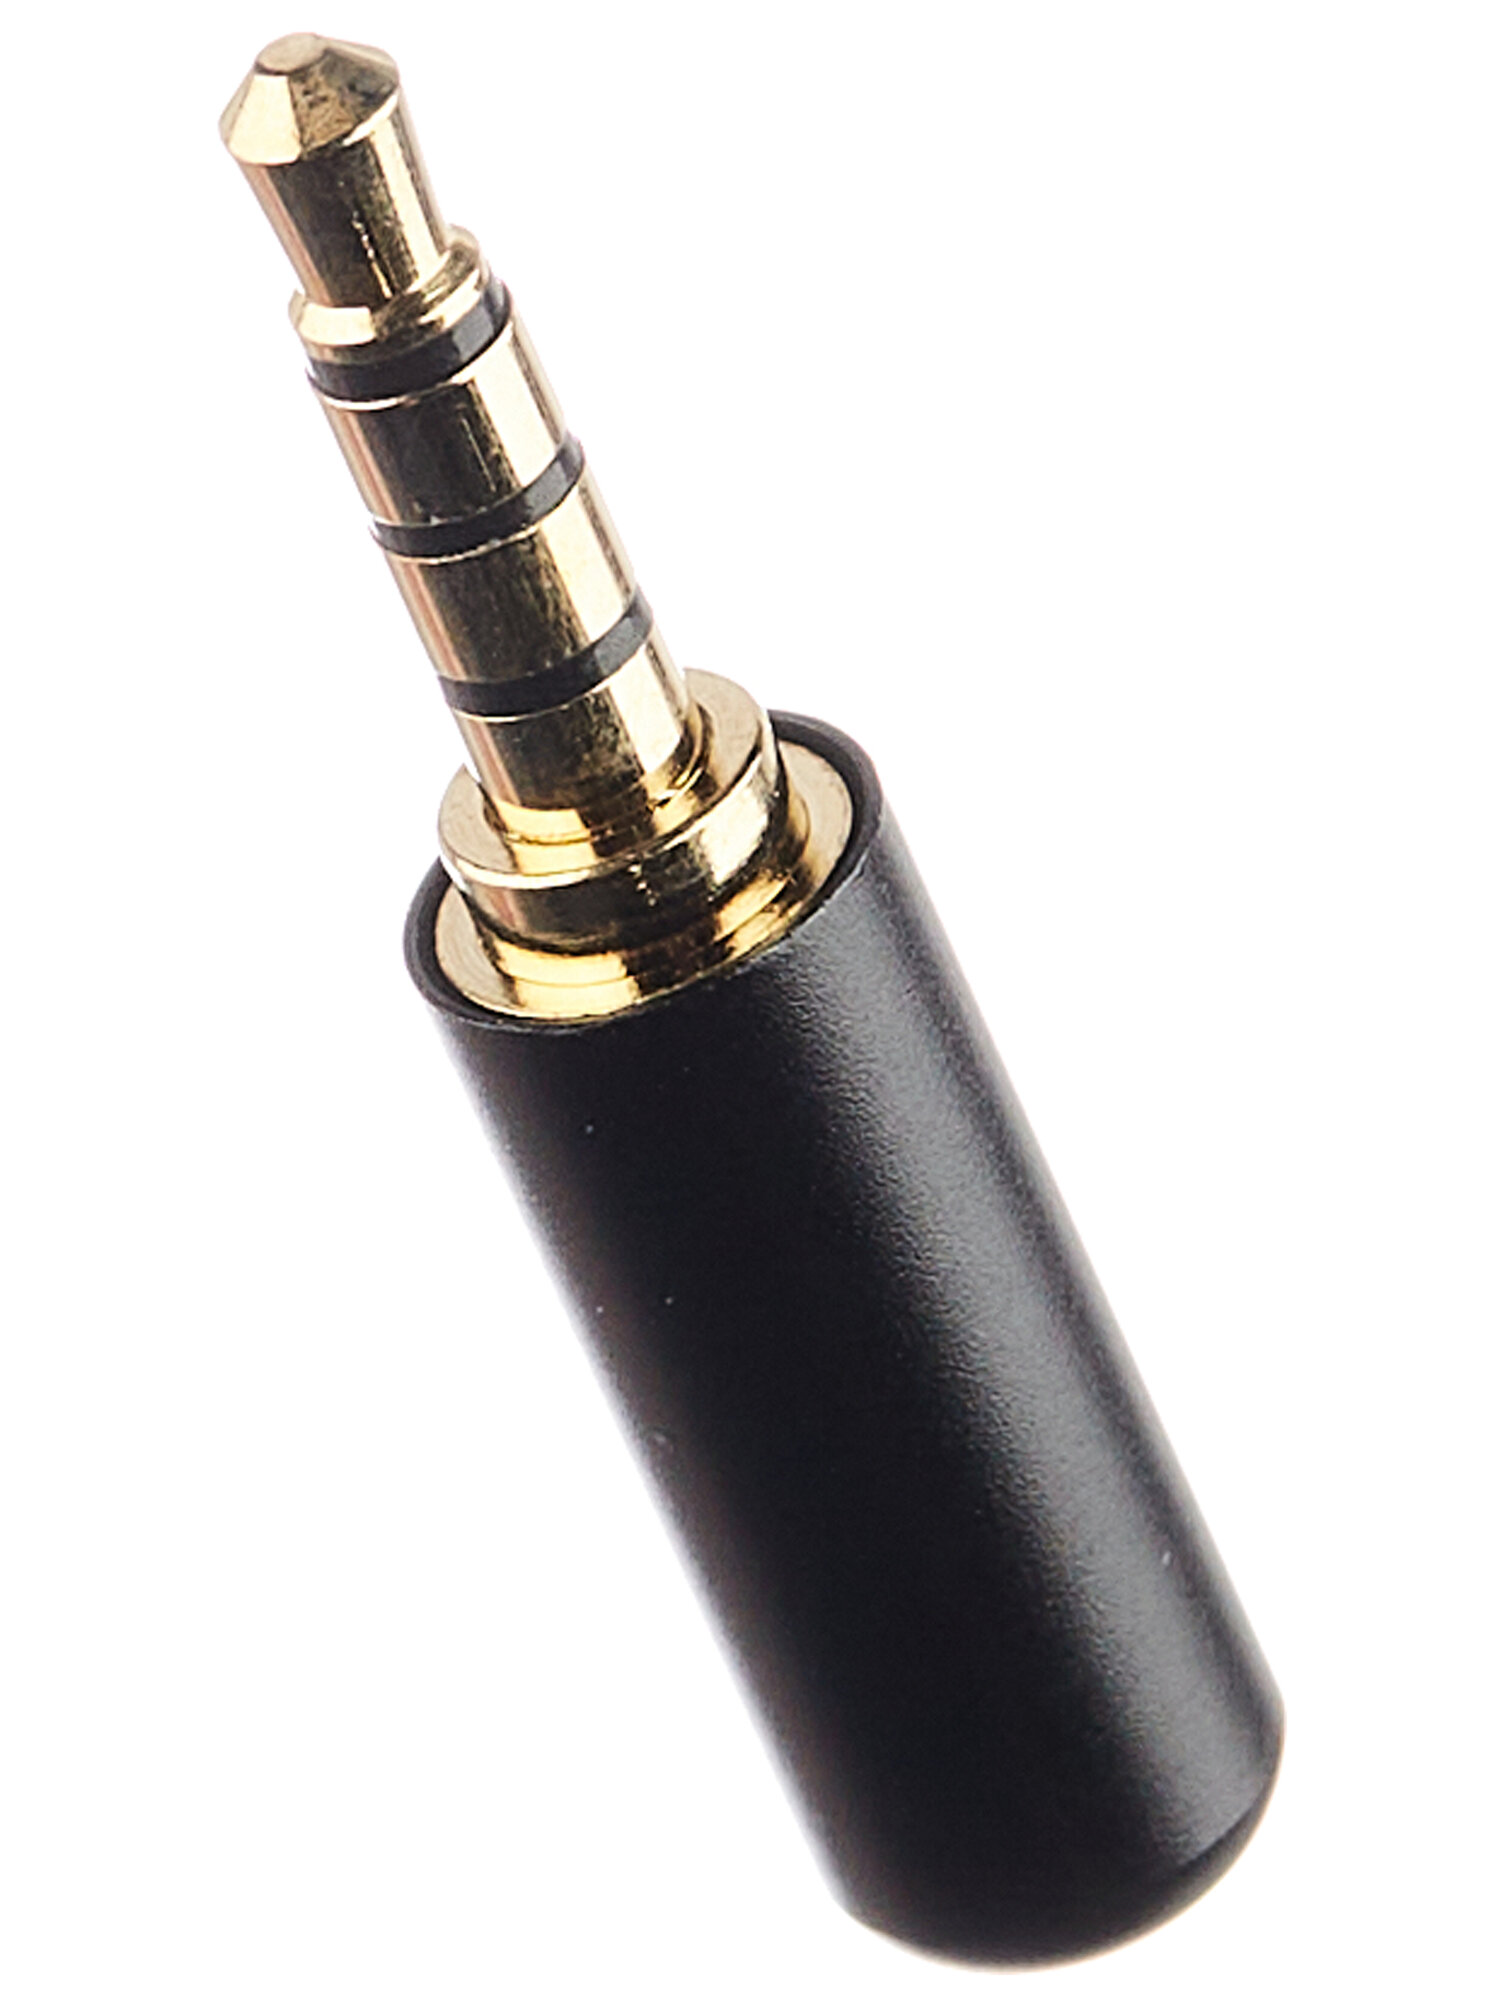 Разъем аудио 3.5 мм "шт" 4C металл "позолоченный" на кабель в мини корпусе черный.